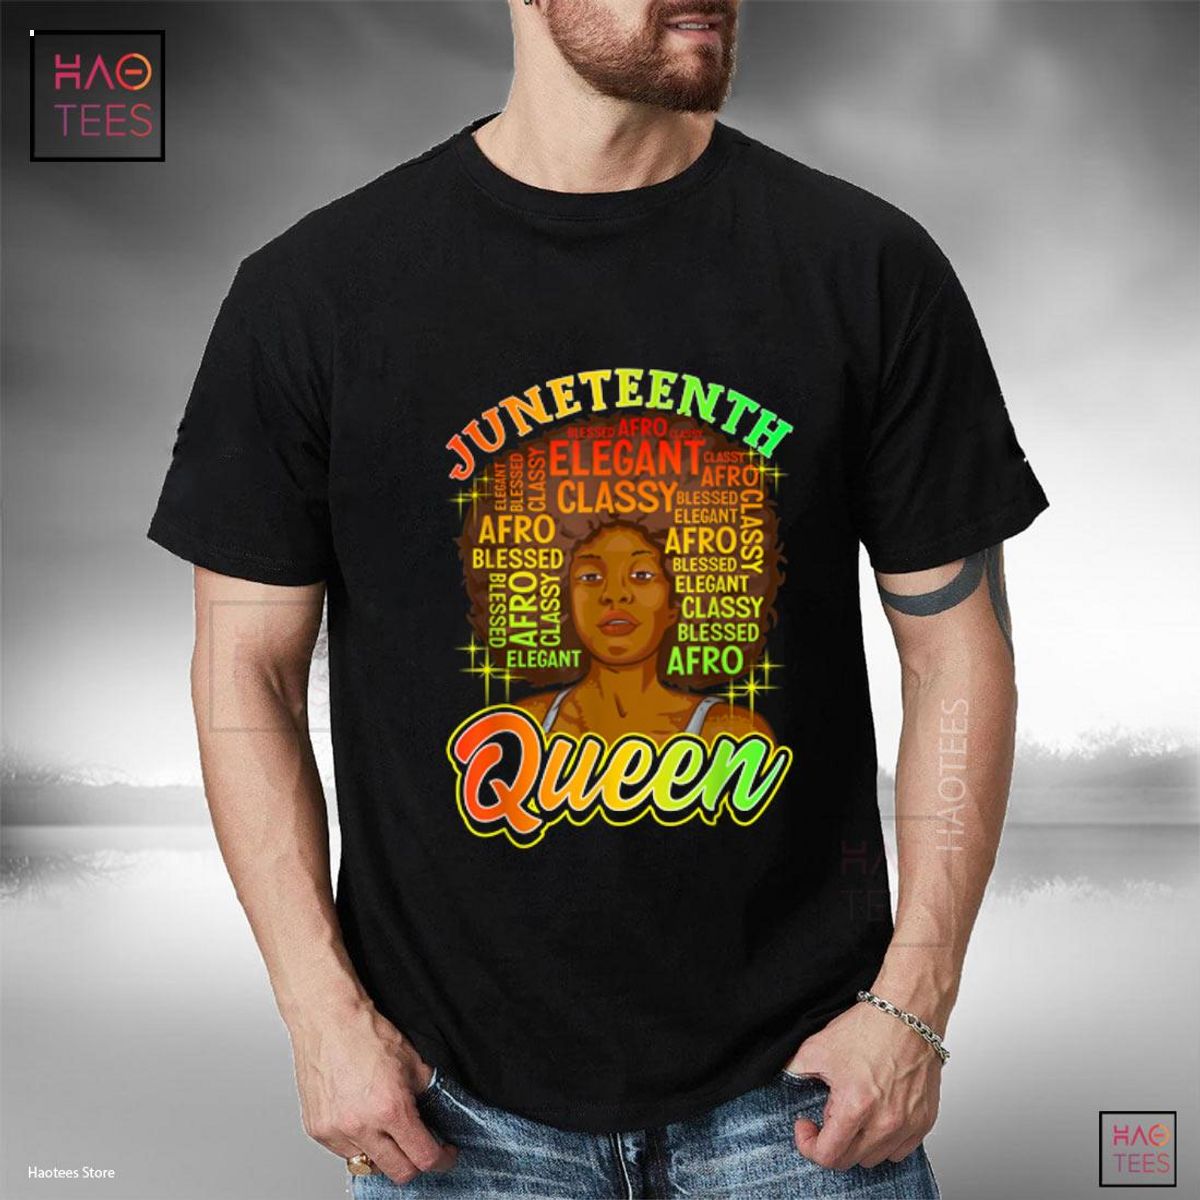 Juneteenth Tshirt Women Juneteenth Shirts Natural Afro Queen Shirt